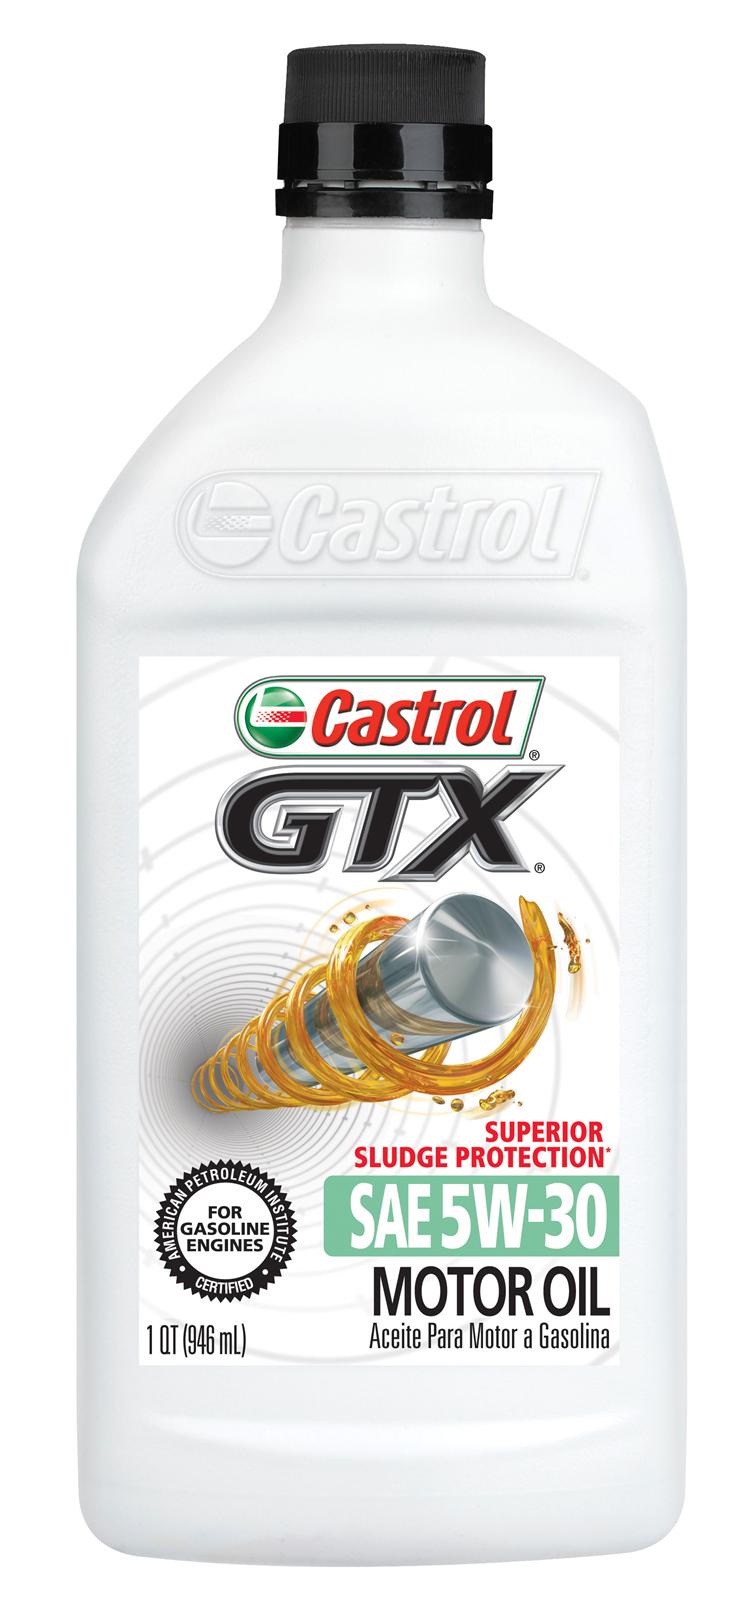 Santie Oil Company  Castrol GTX Ultraclean 5w30 - 55 Gallon Drum